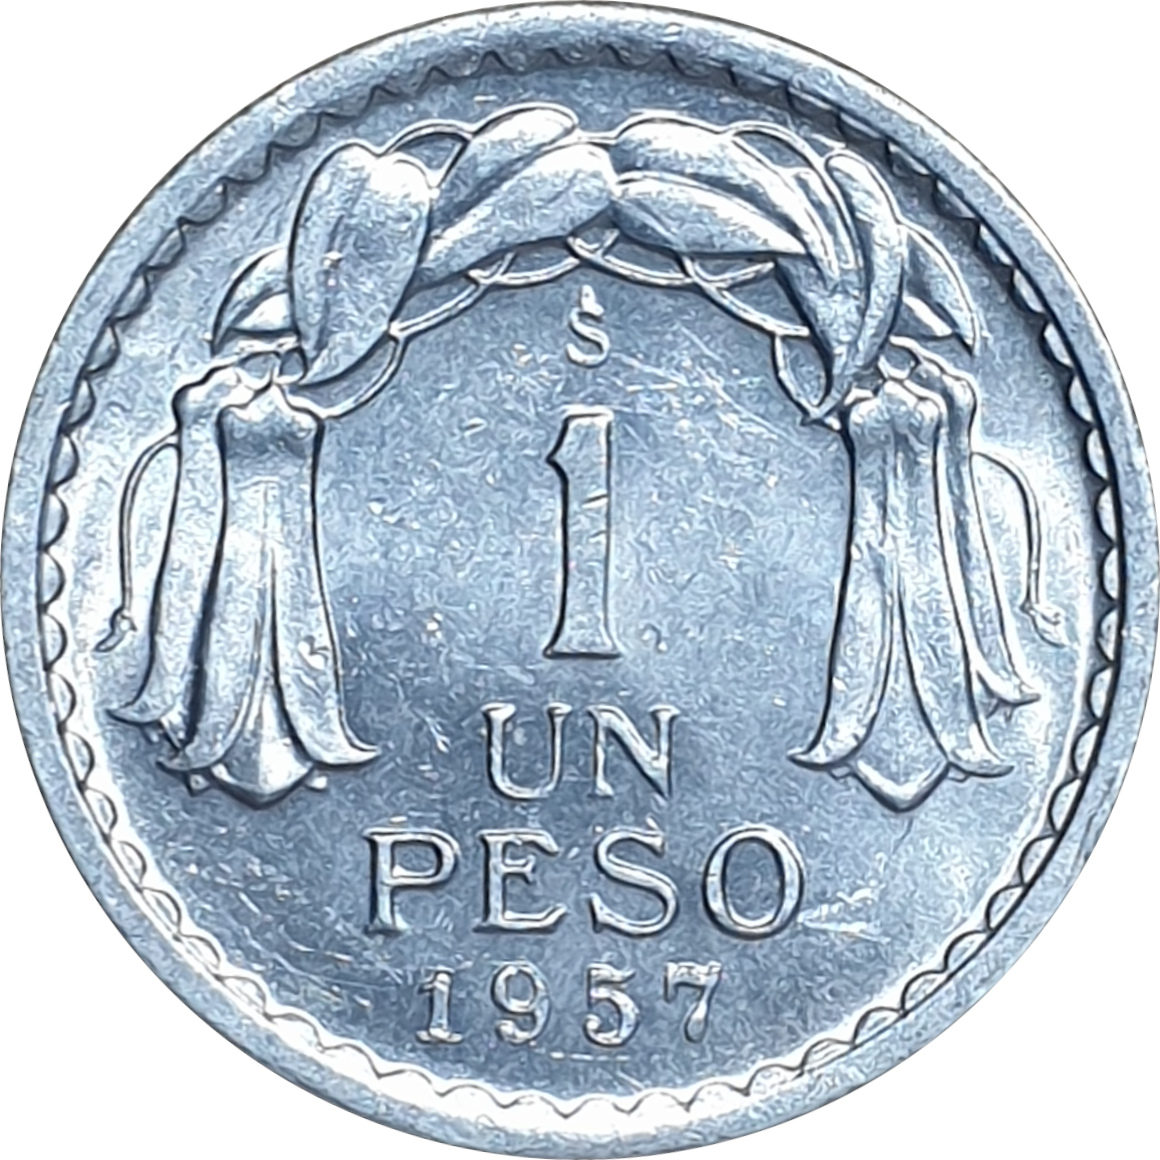 1 peso - Chaucha - Aluminium